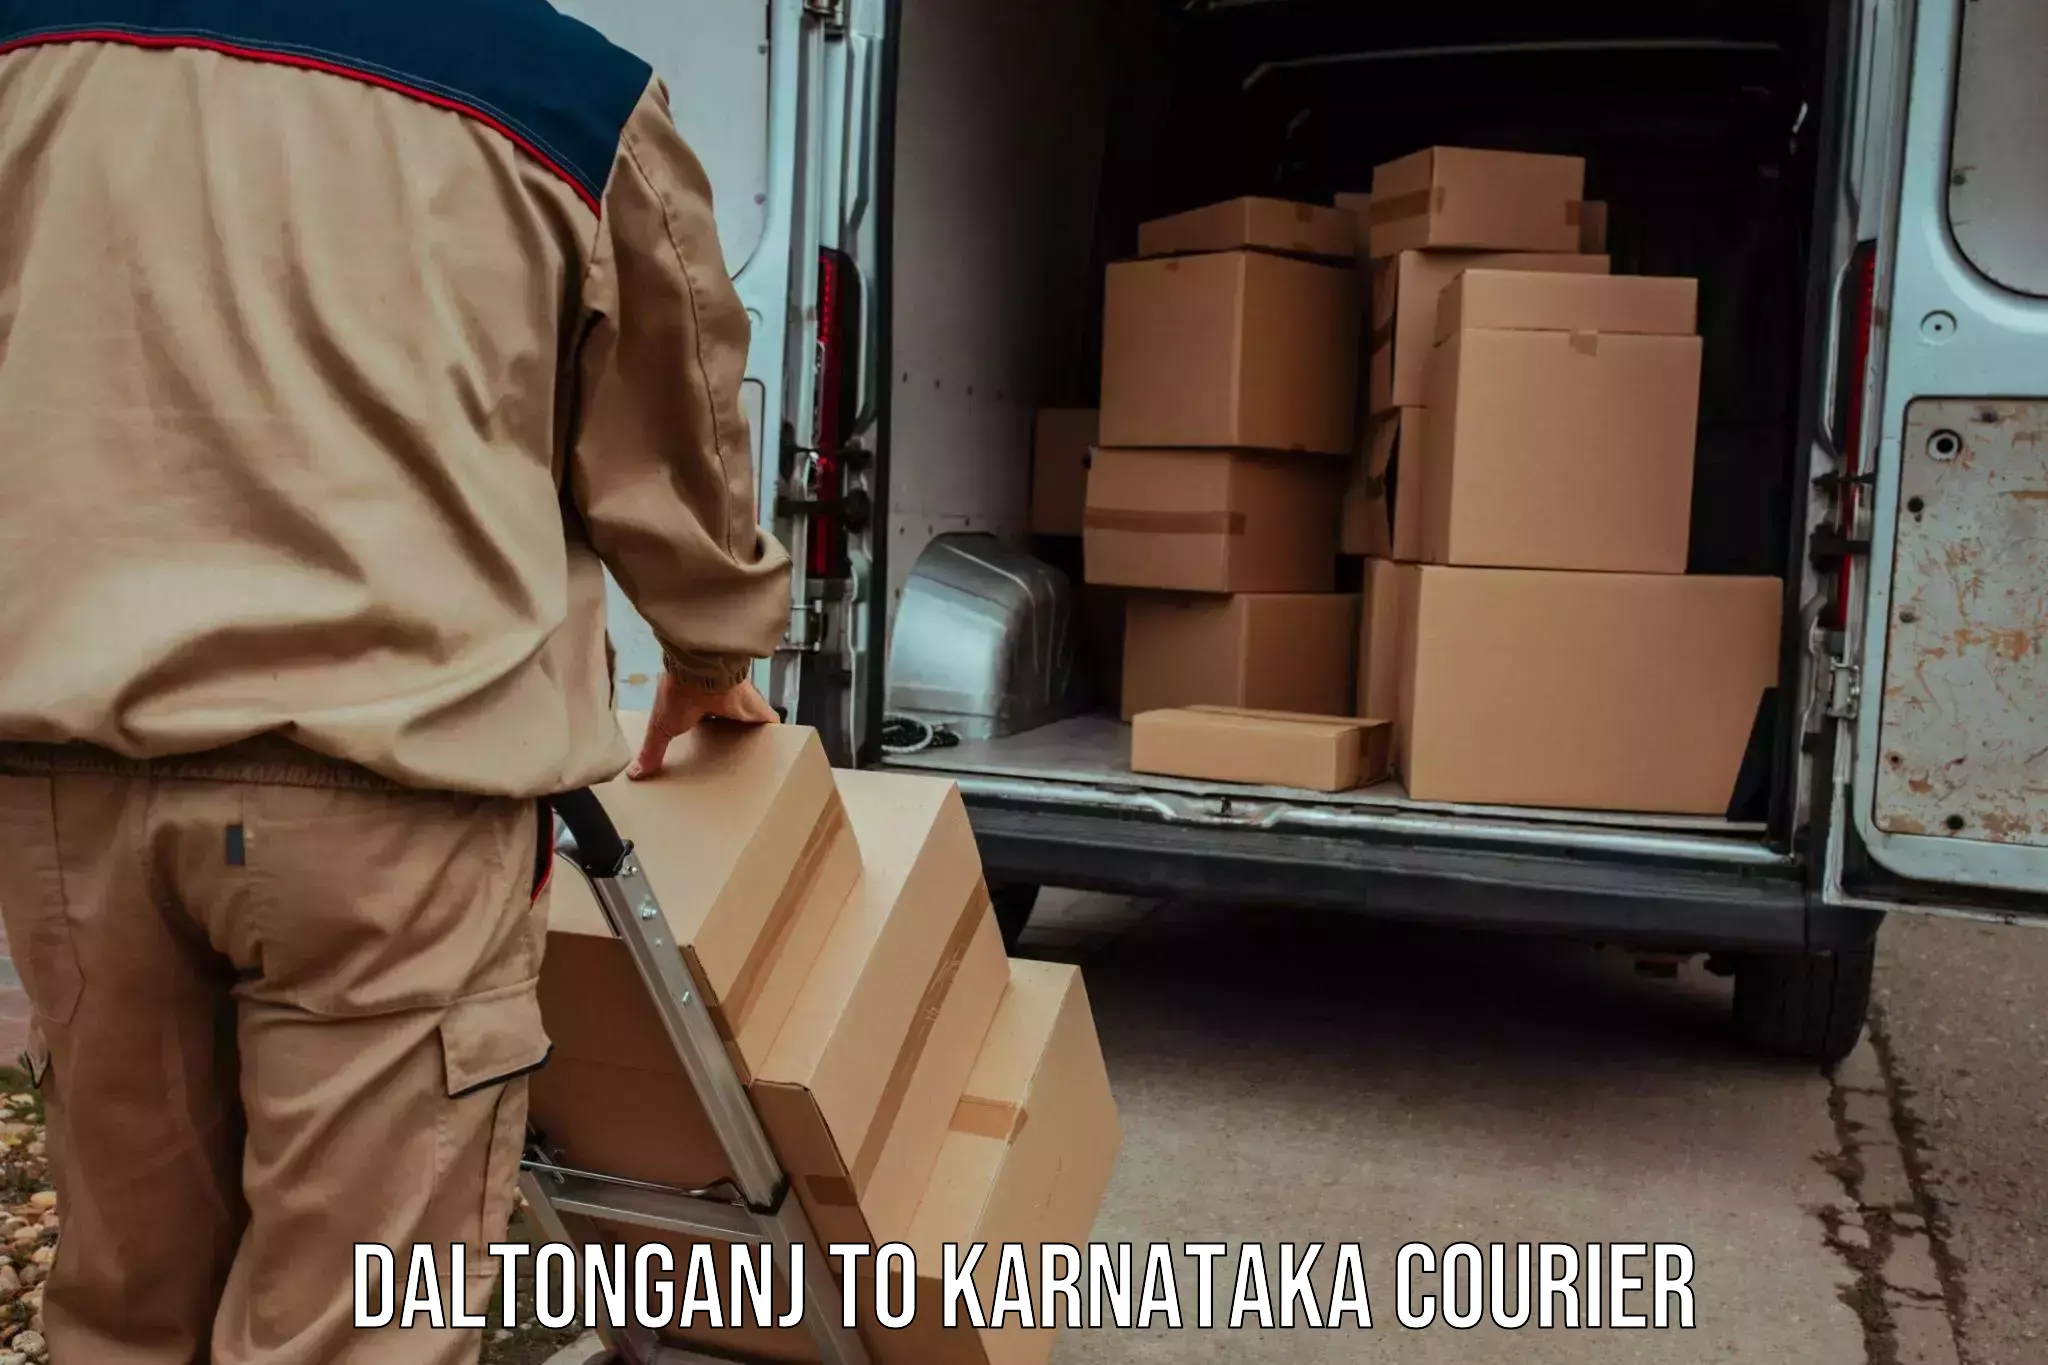 Cross-border shipping Daltonganj to Karnataka